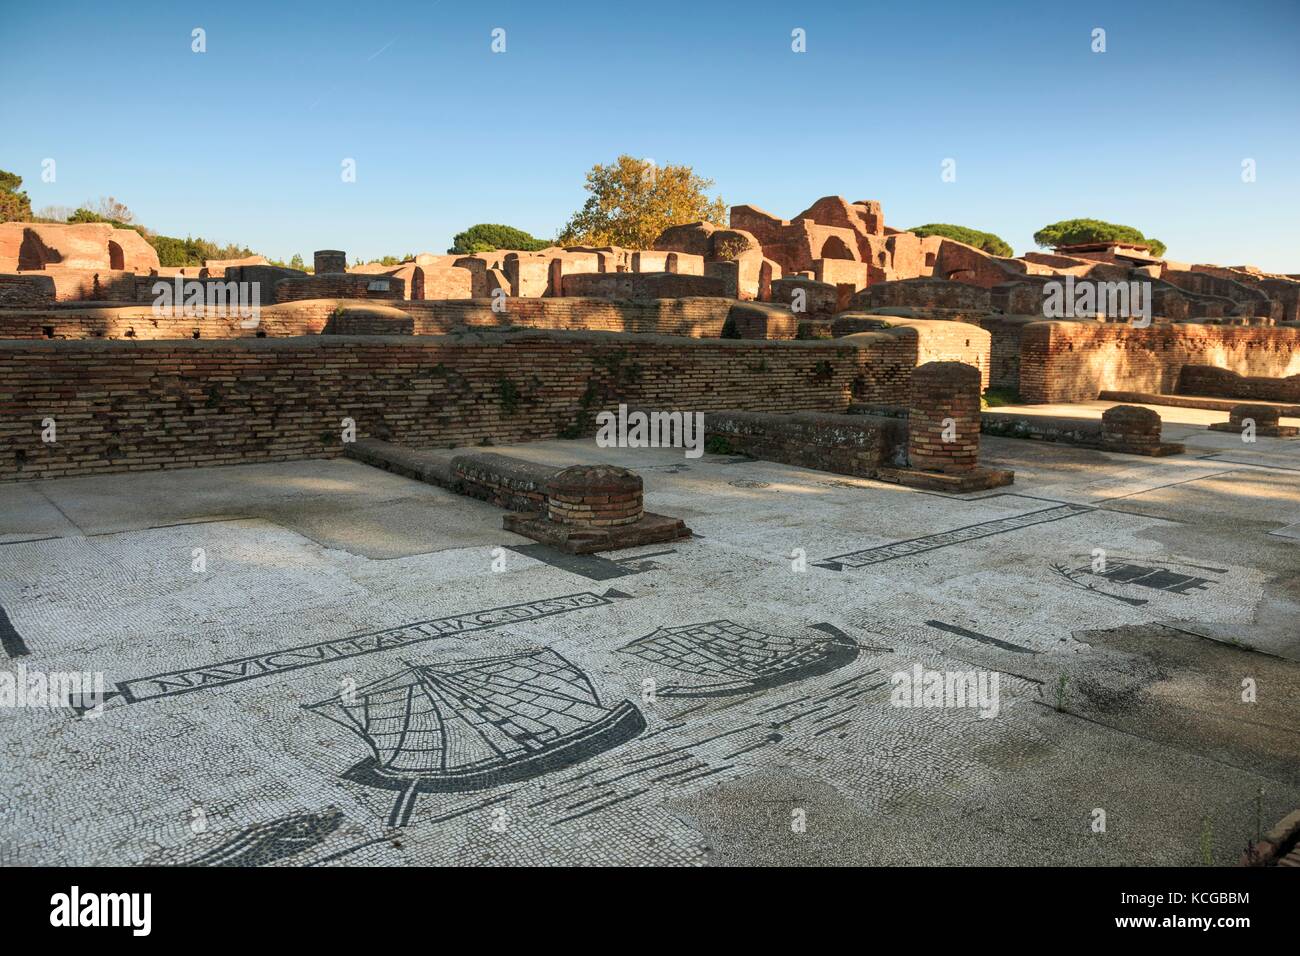 Mosaics at Square of the Guilds, Piazzale delle Corporazioni, Ostia Antica ruins, near Rome, Italy. Stock Photo